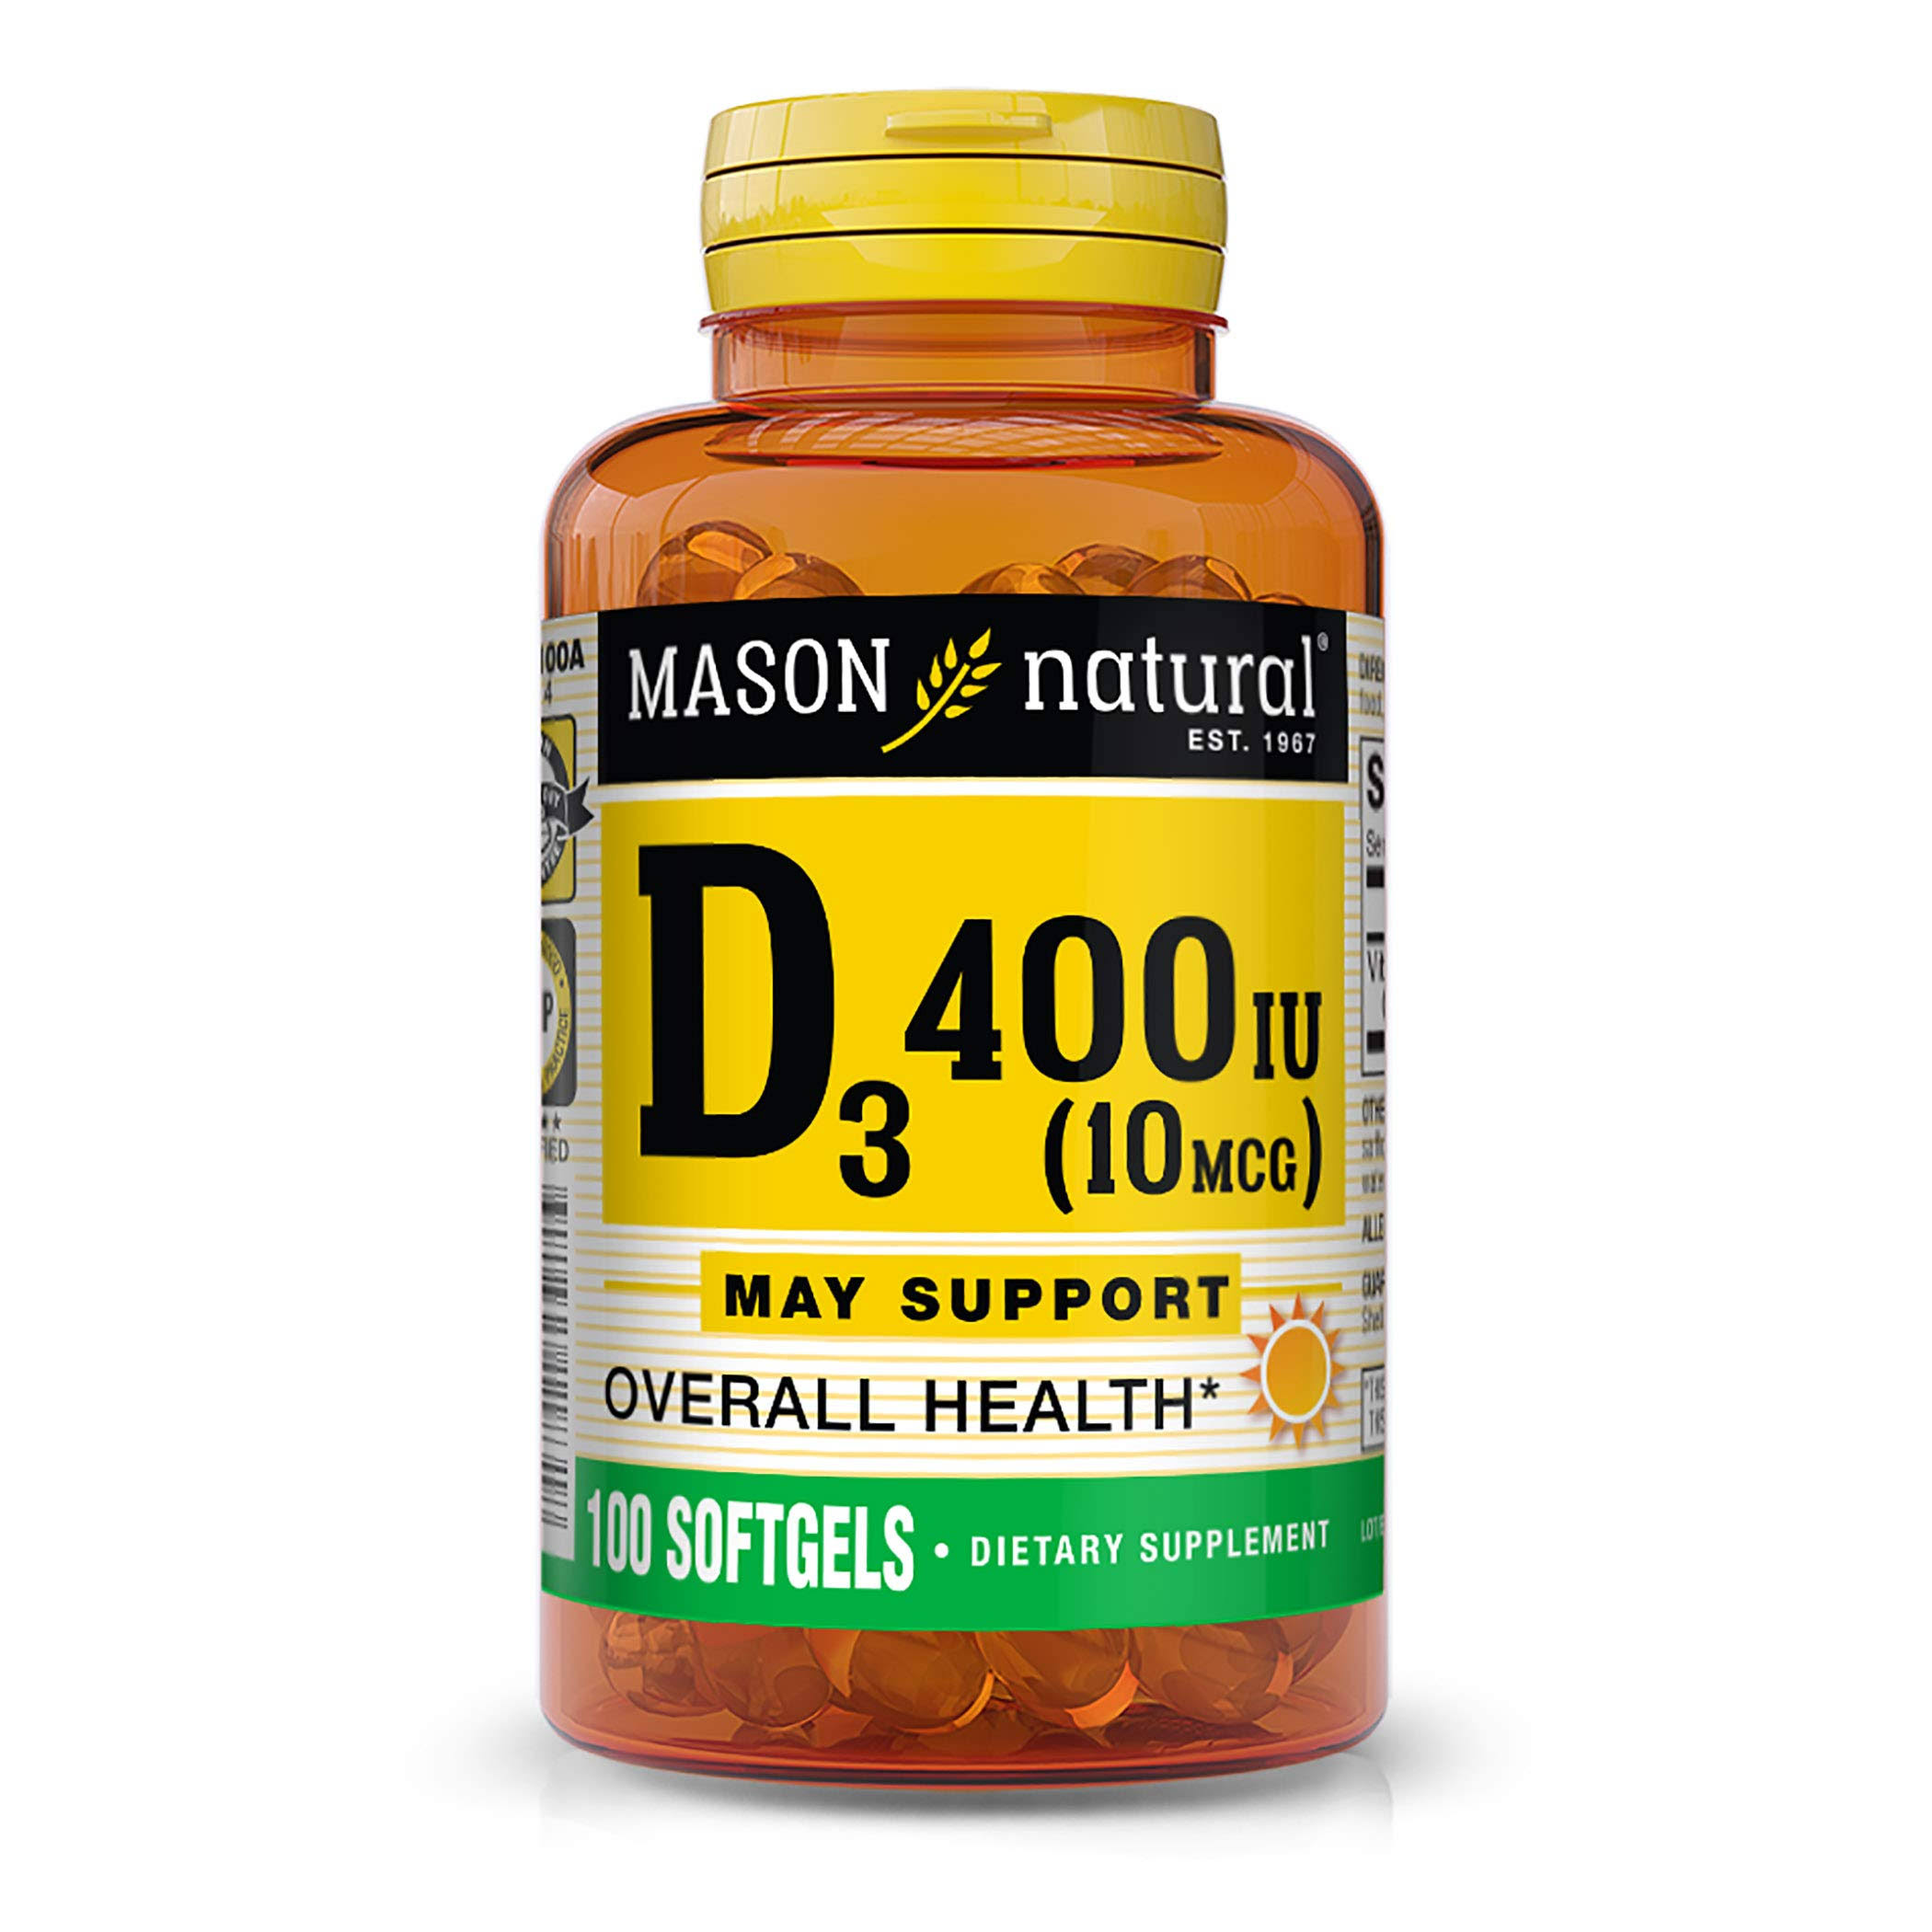 Mason Natural Vitamin D 400 IU Supplement - 100 Softgels